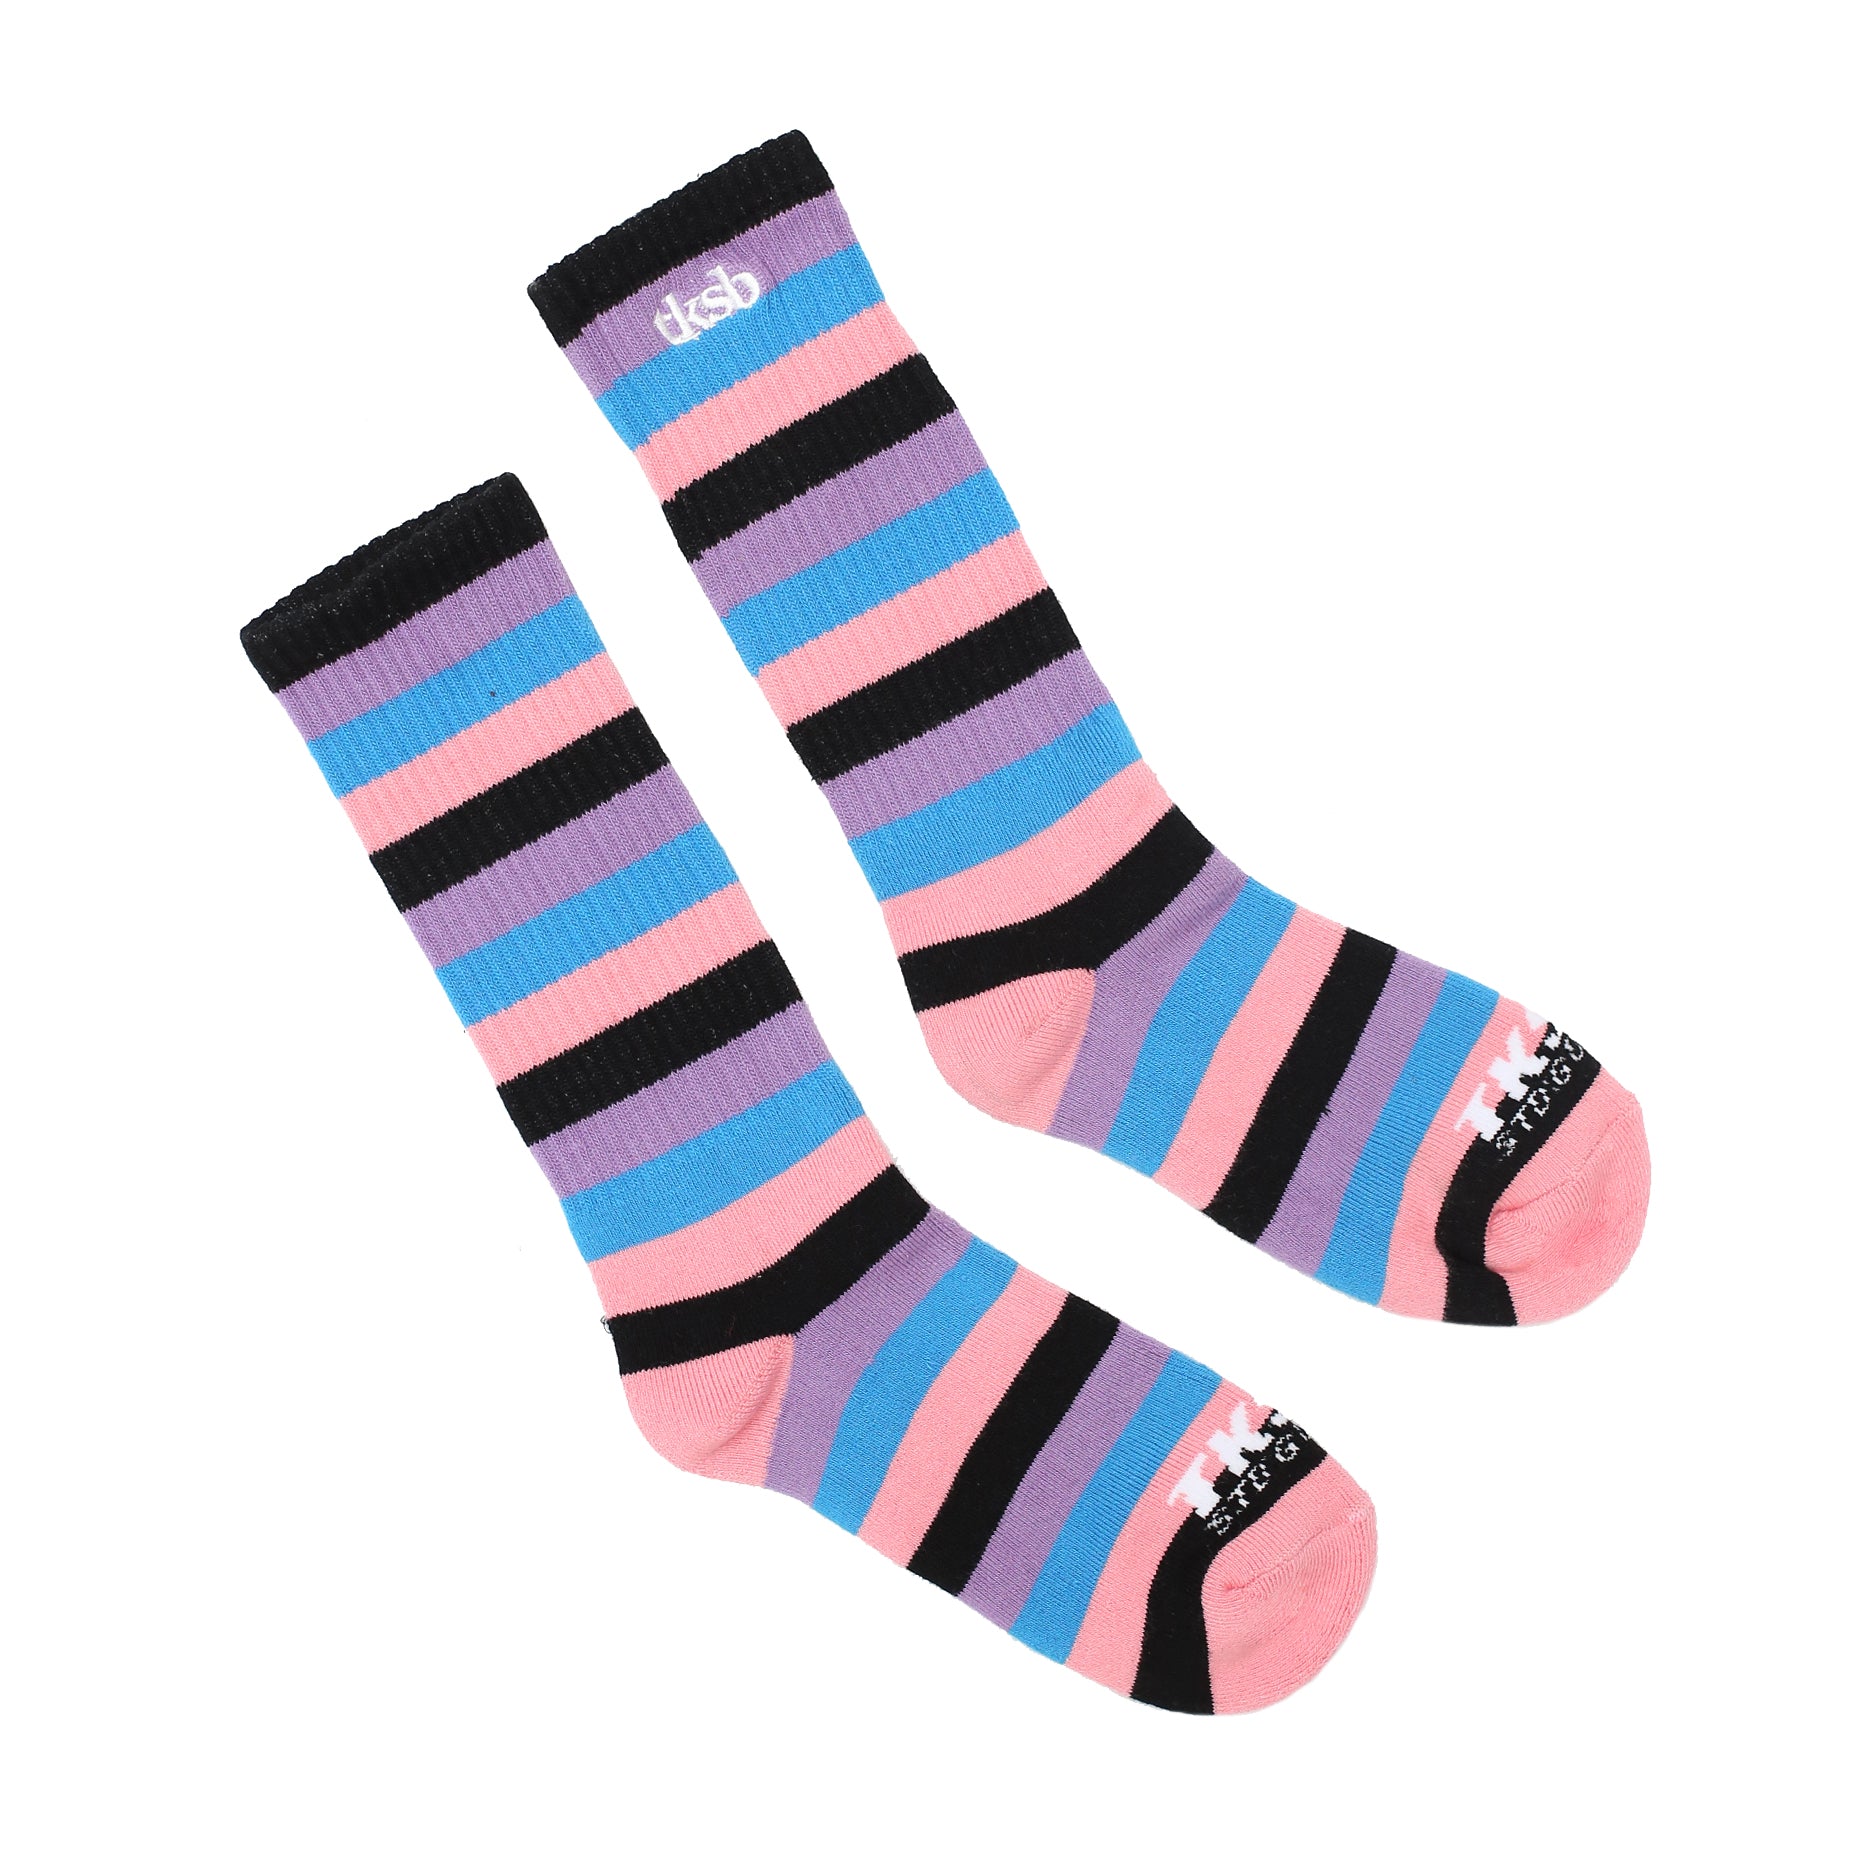 TKSB - PM Midnight Pink Stripe Socks